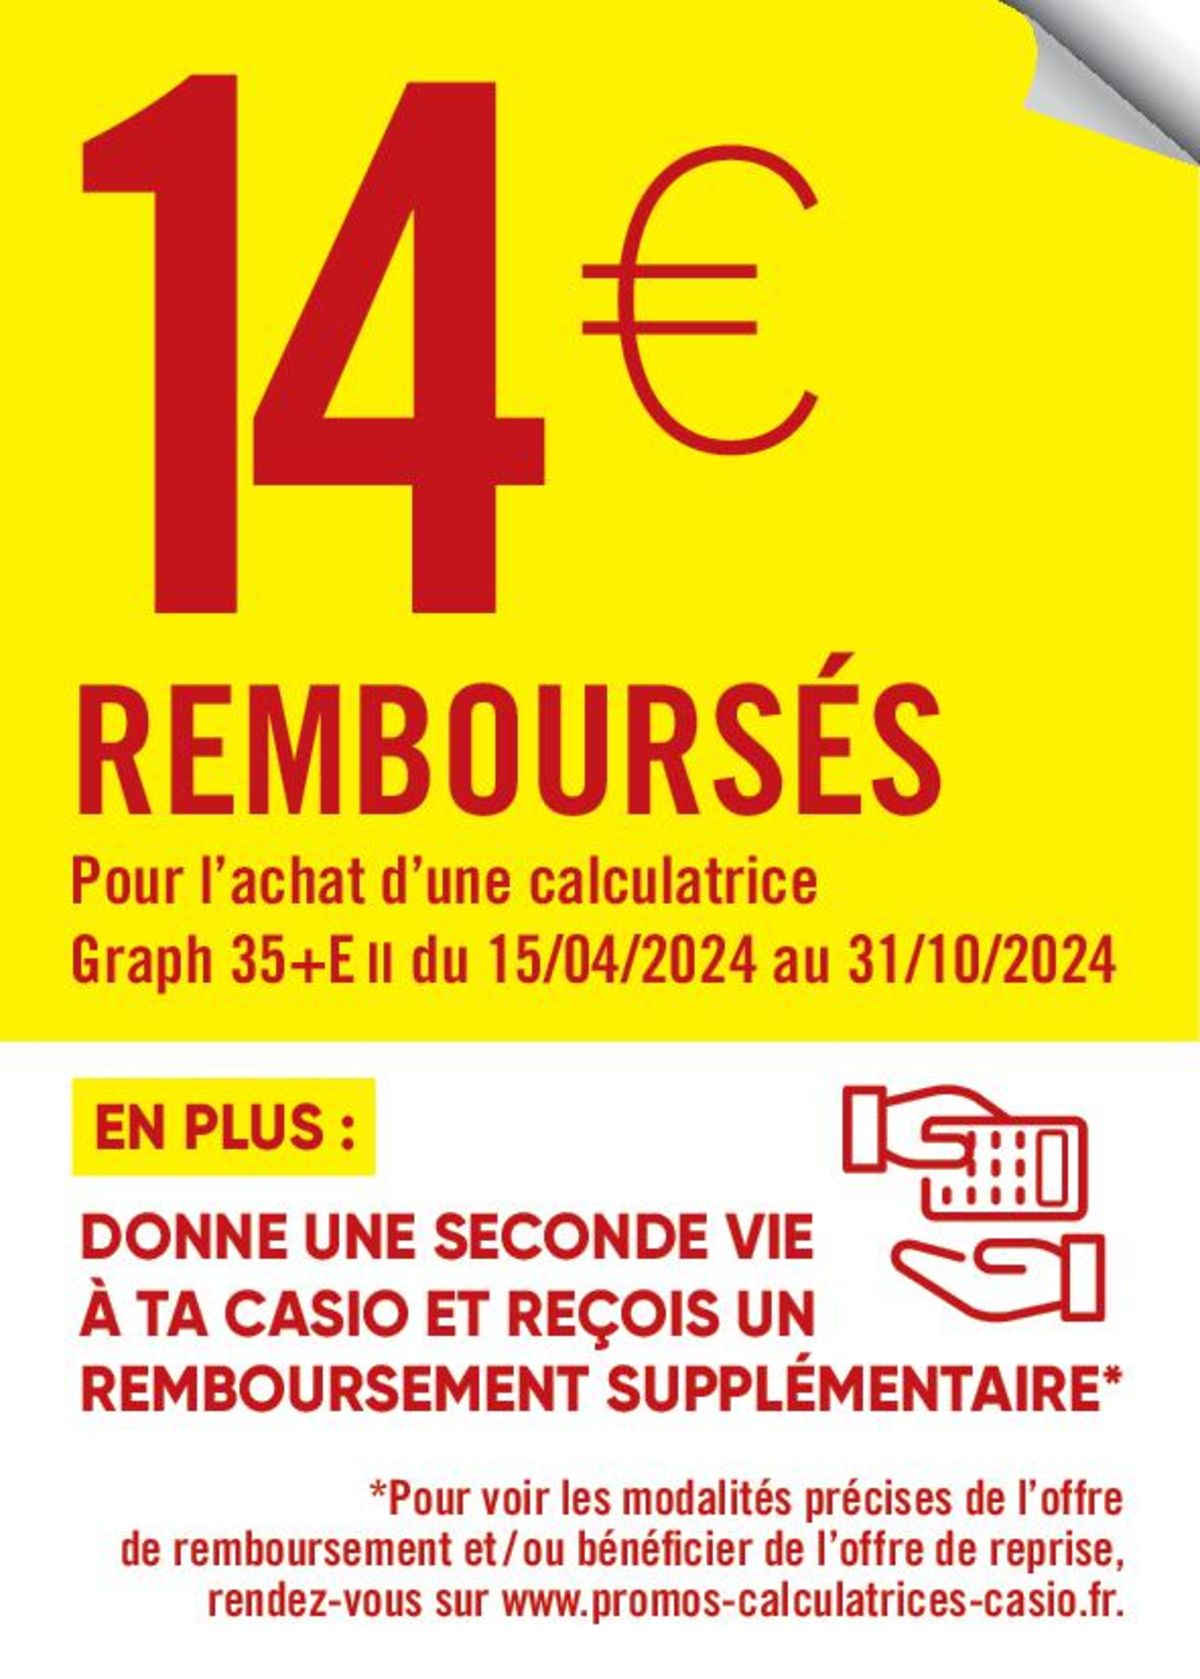 Catalogue 14€ REMBOURSÉS AVEC CASIO, page 00001